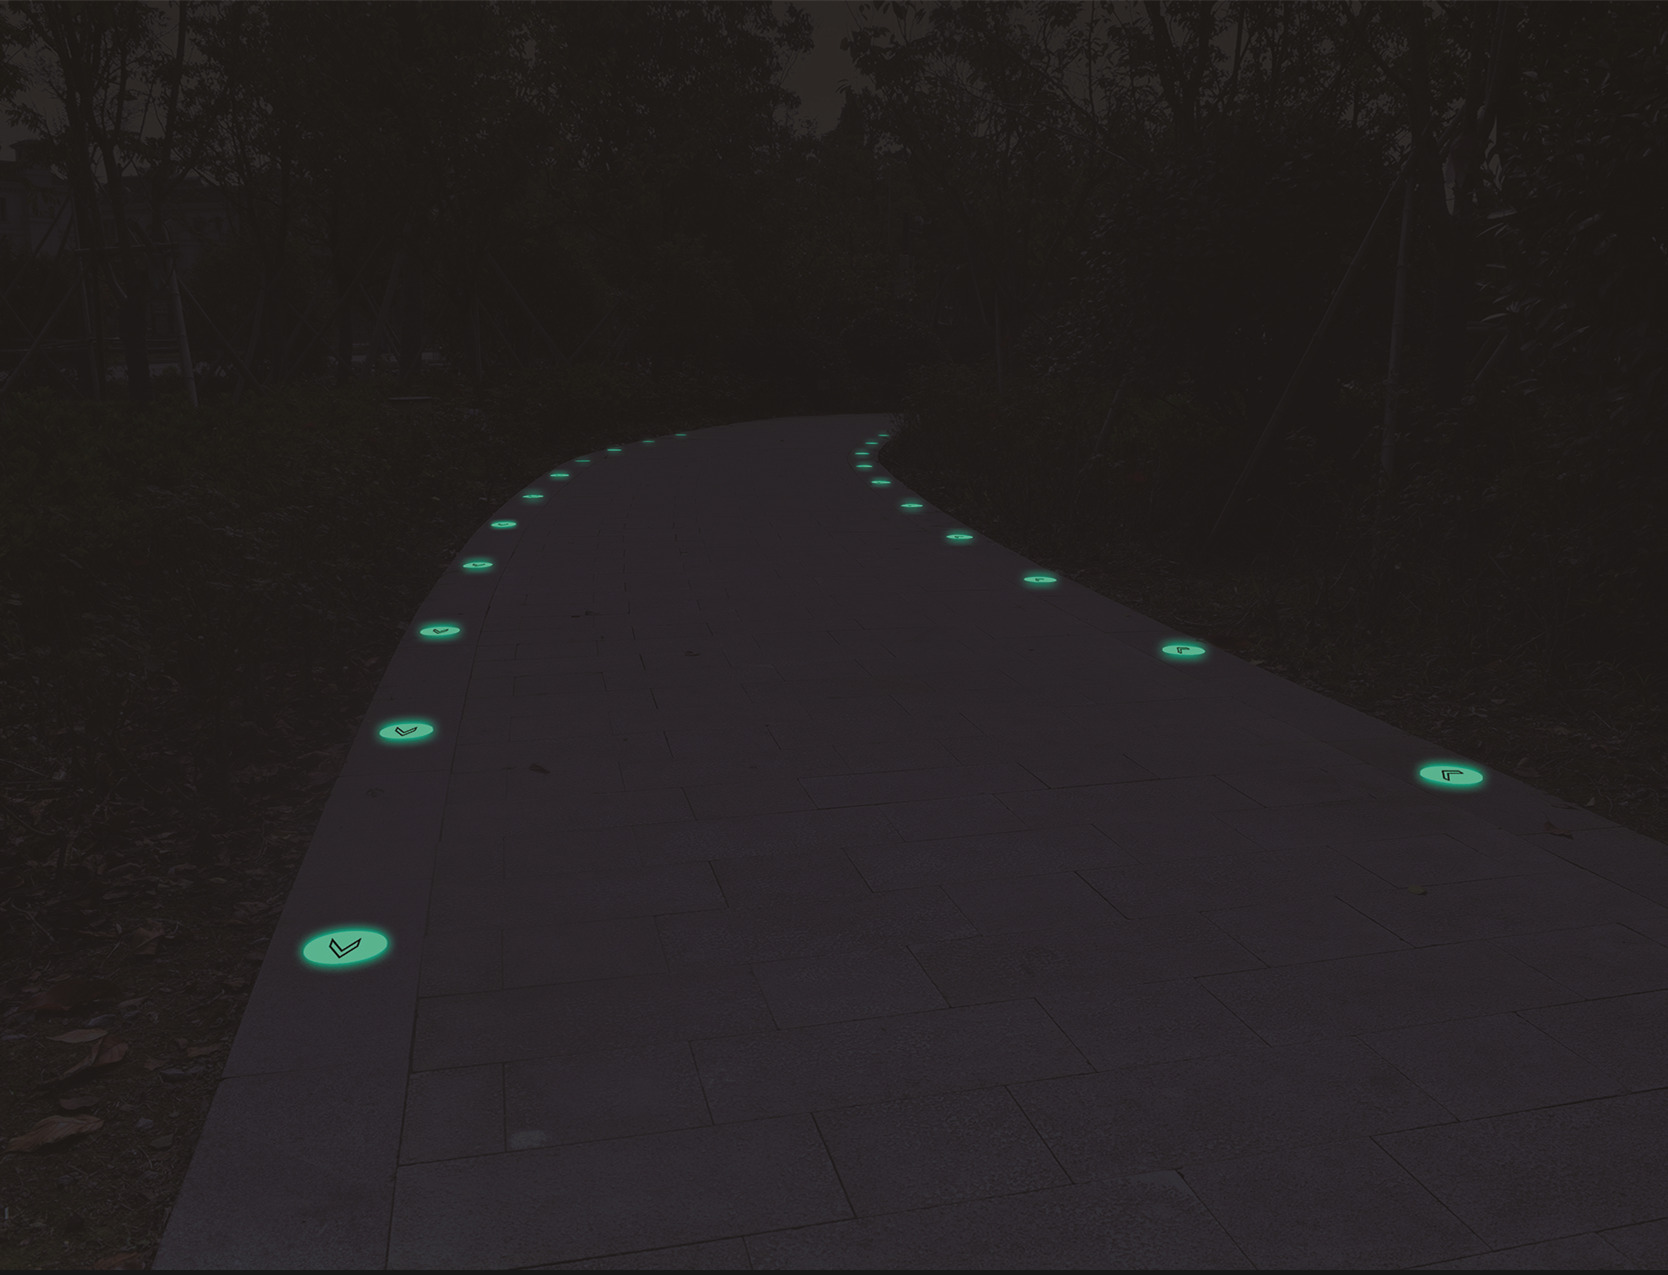 Avertissement lumineux inorganique, surveillez votre pas dans le parc en bas